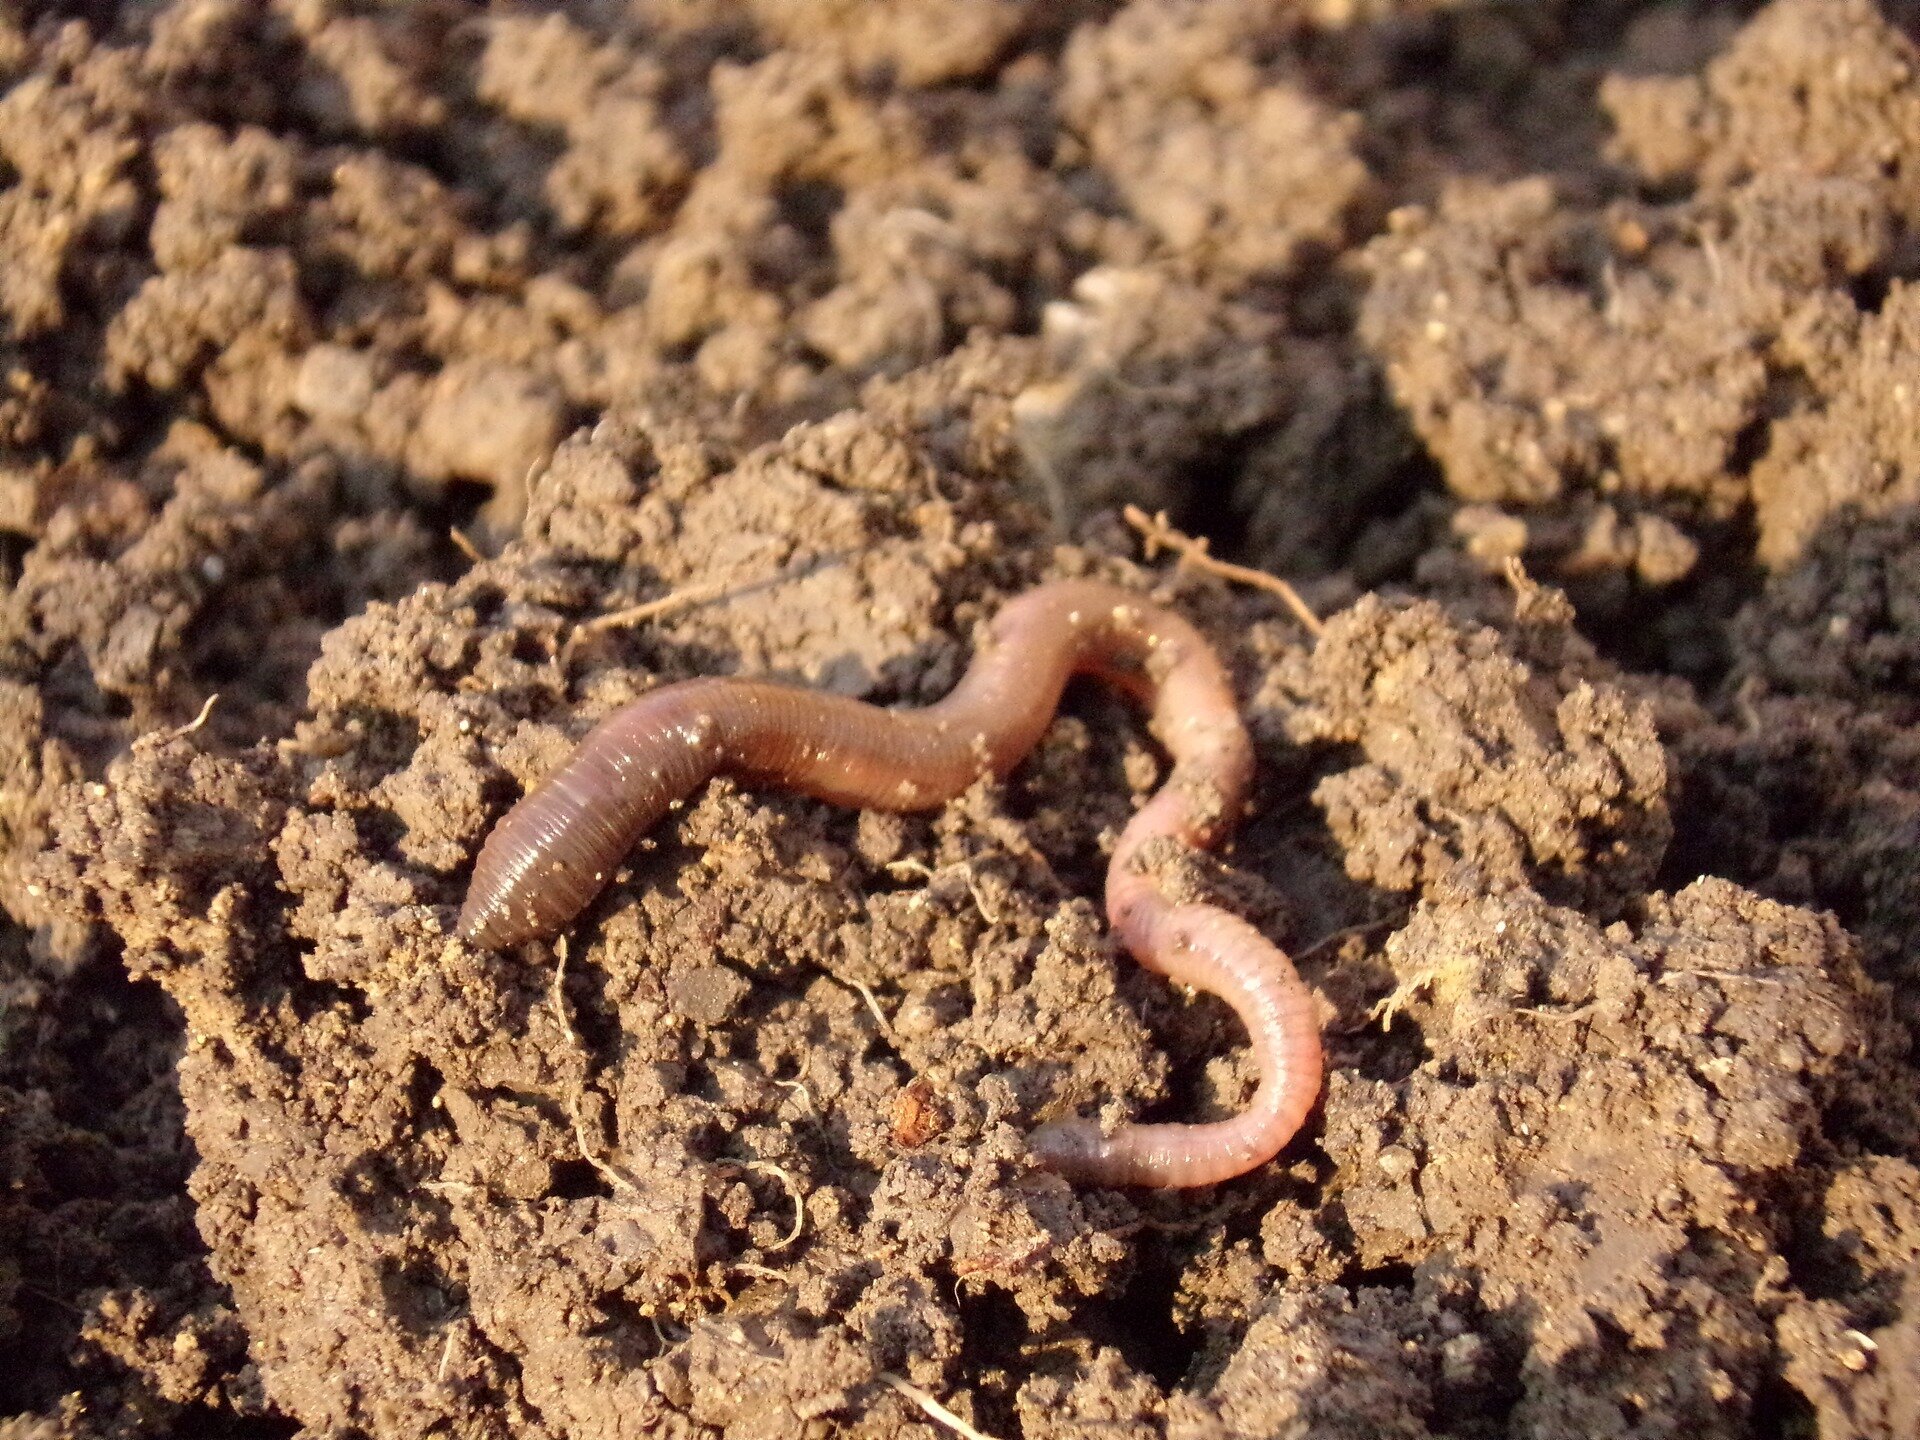 https://scx2.b-cdn.net/gfx/news/hires/2019/earthworms.jpg